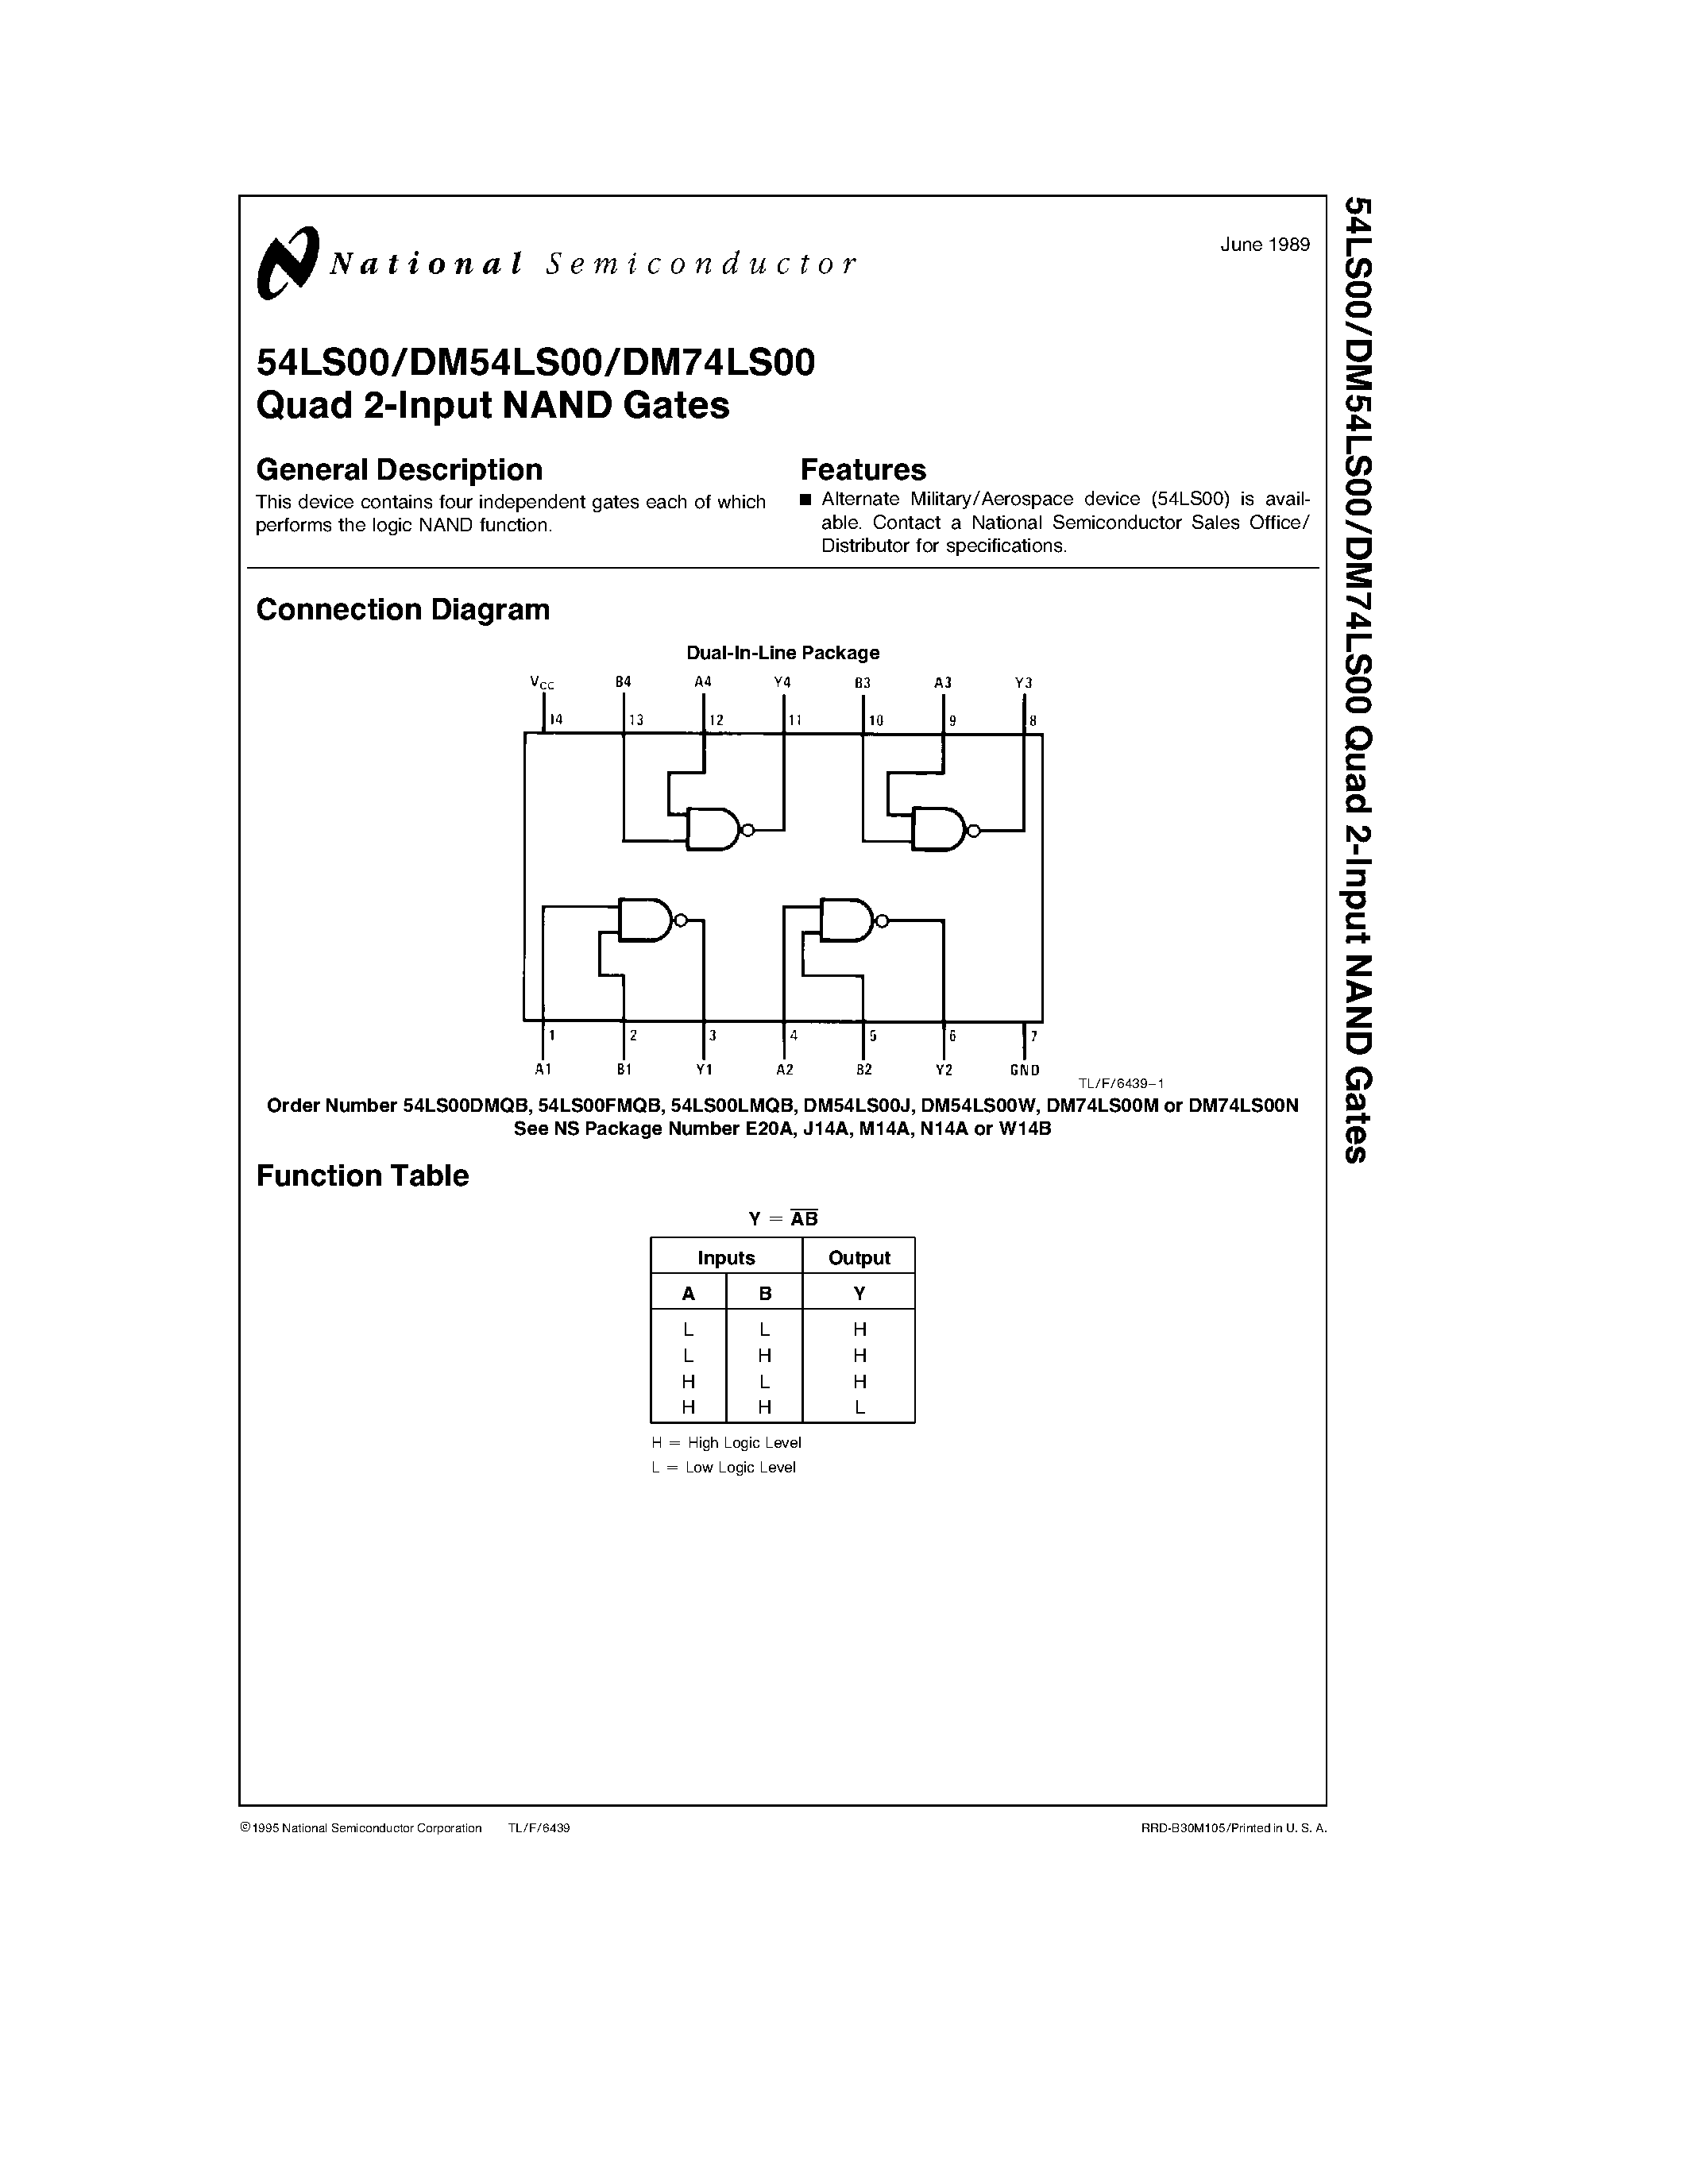 Даташит DM74LS00W - Quad 2-Input NAND Gates страница 1